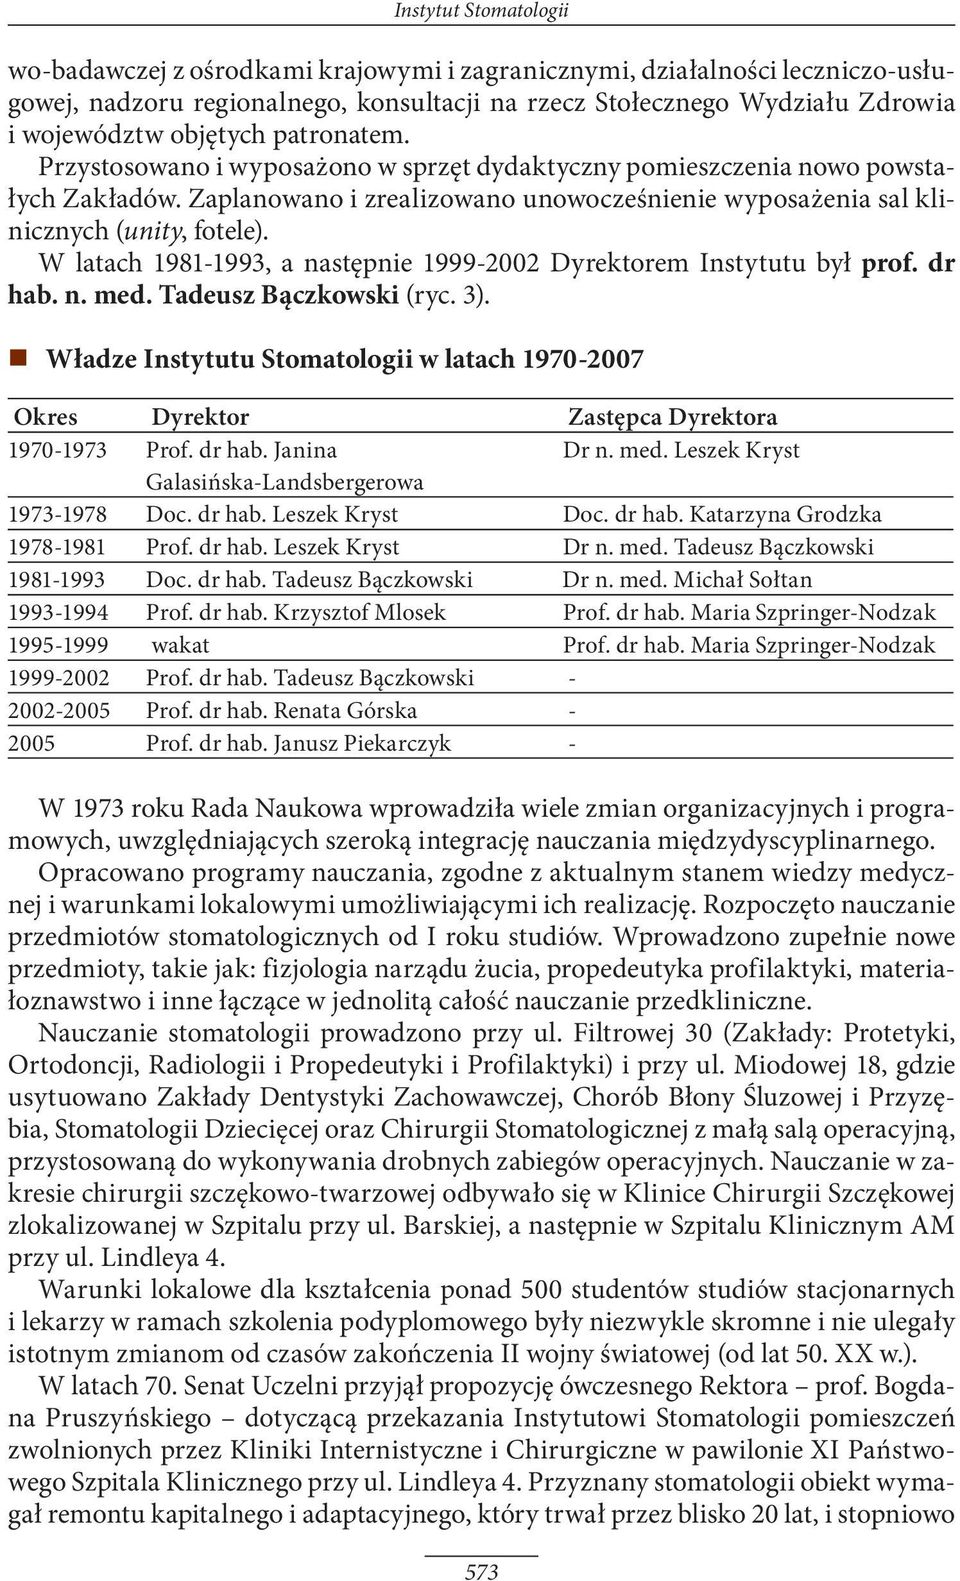 W latach 1981-1993, a następnie 1999-2002 Dyrektorem Instytutu był prof. dr hab. n. med. Tadeusz Bączkowski (ryc. 3).